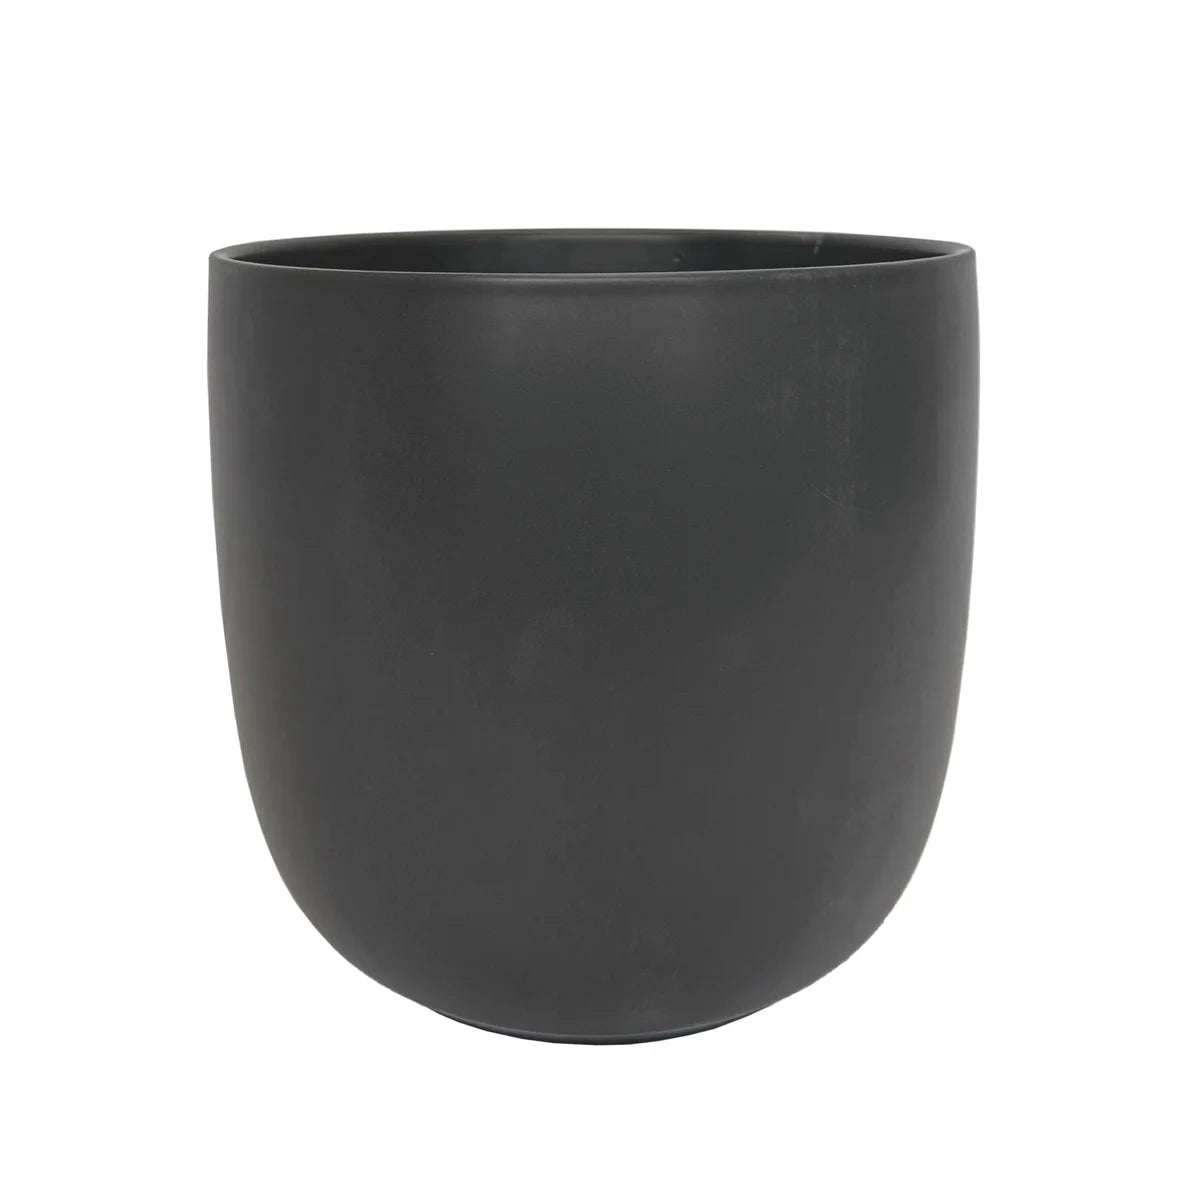 Pot Lana pot round matte black - 11x9.75"  50464